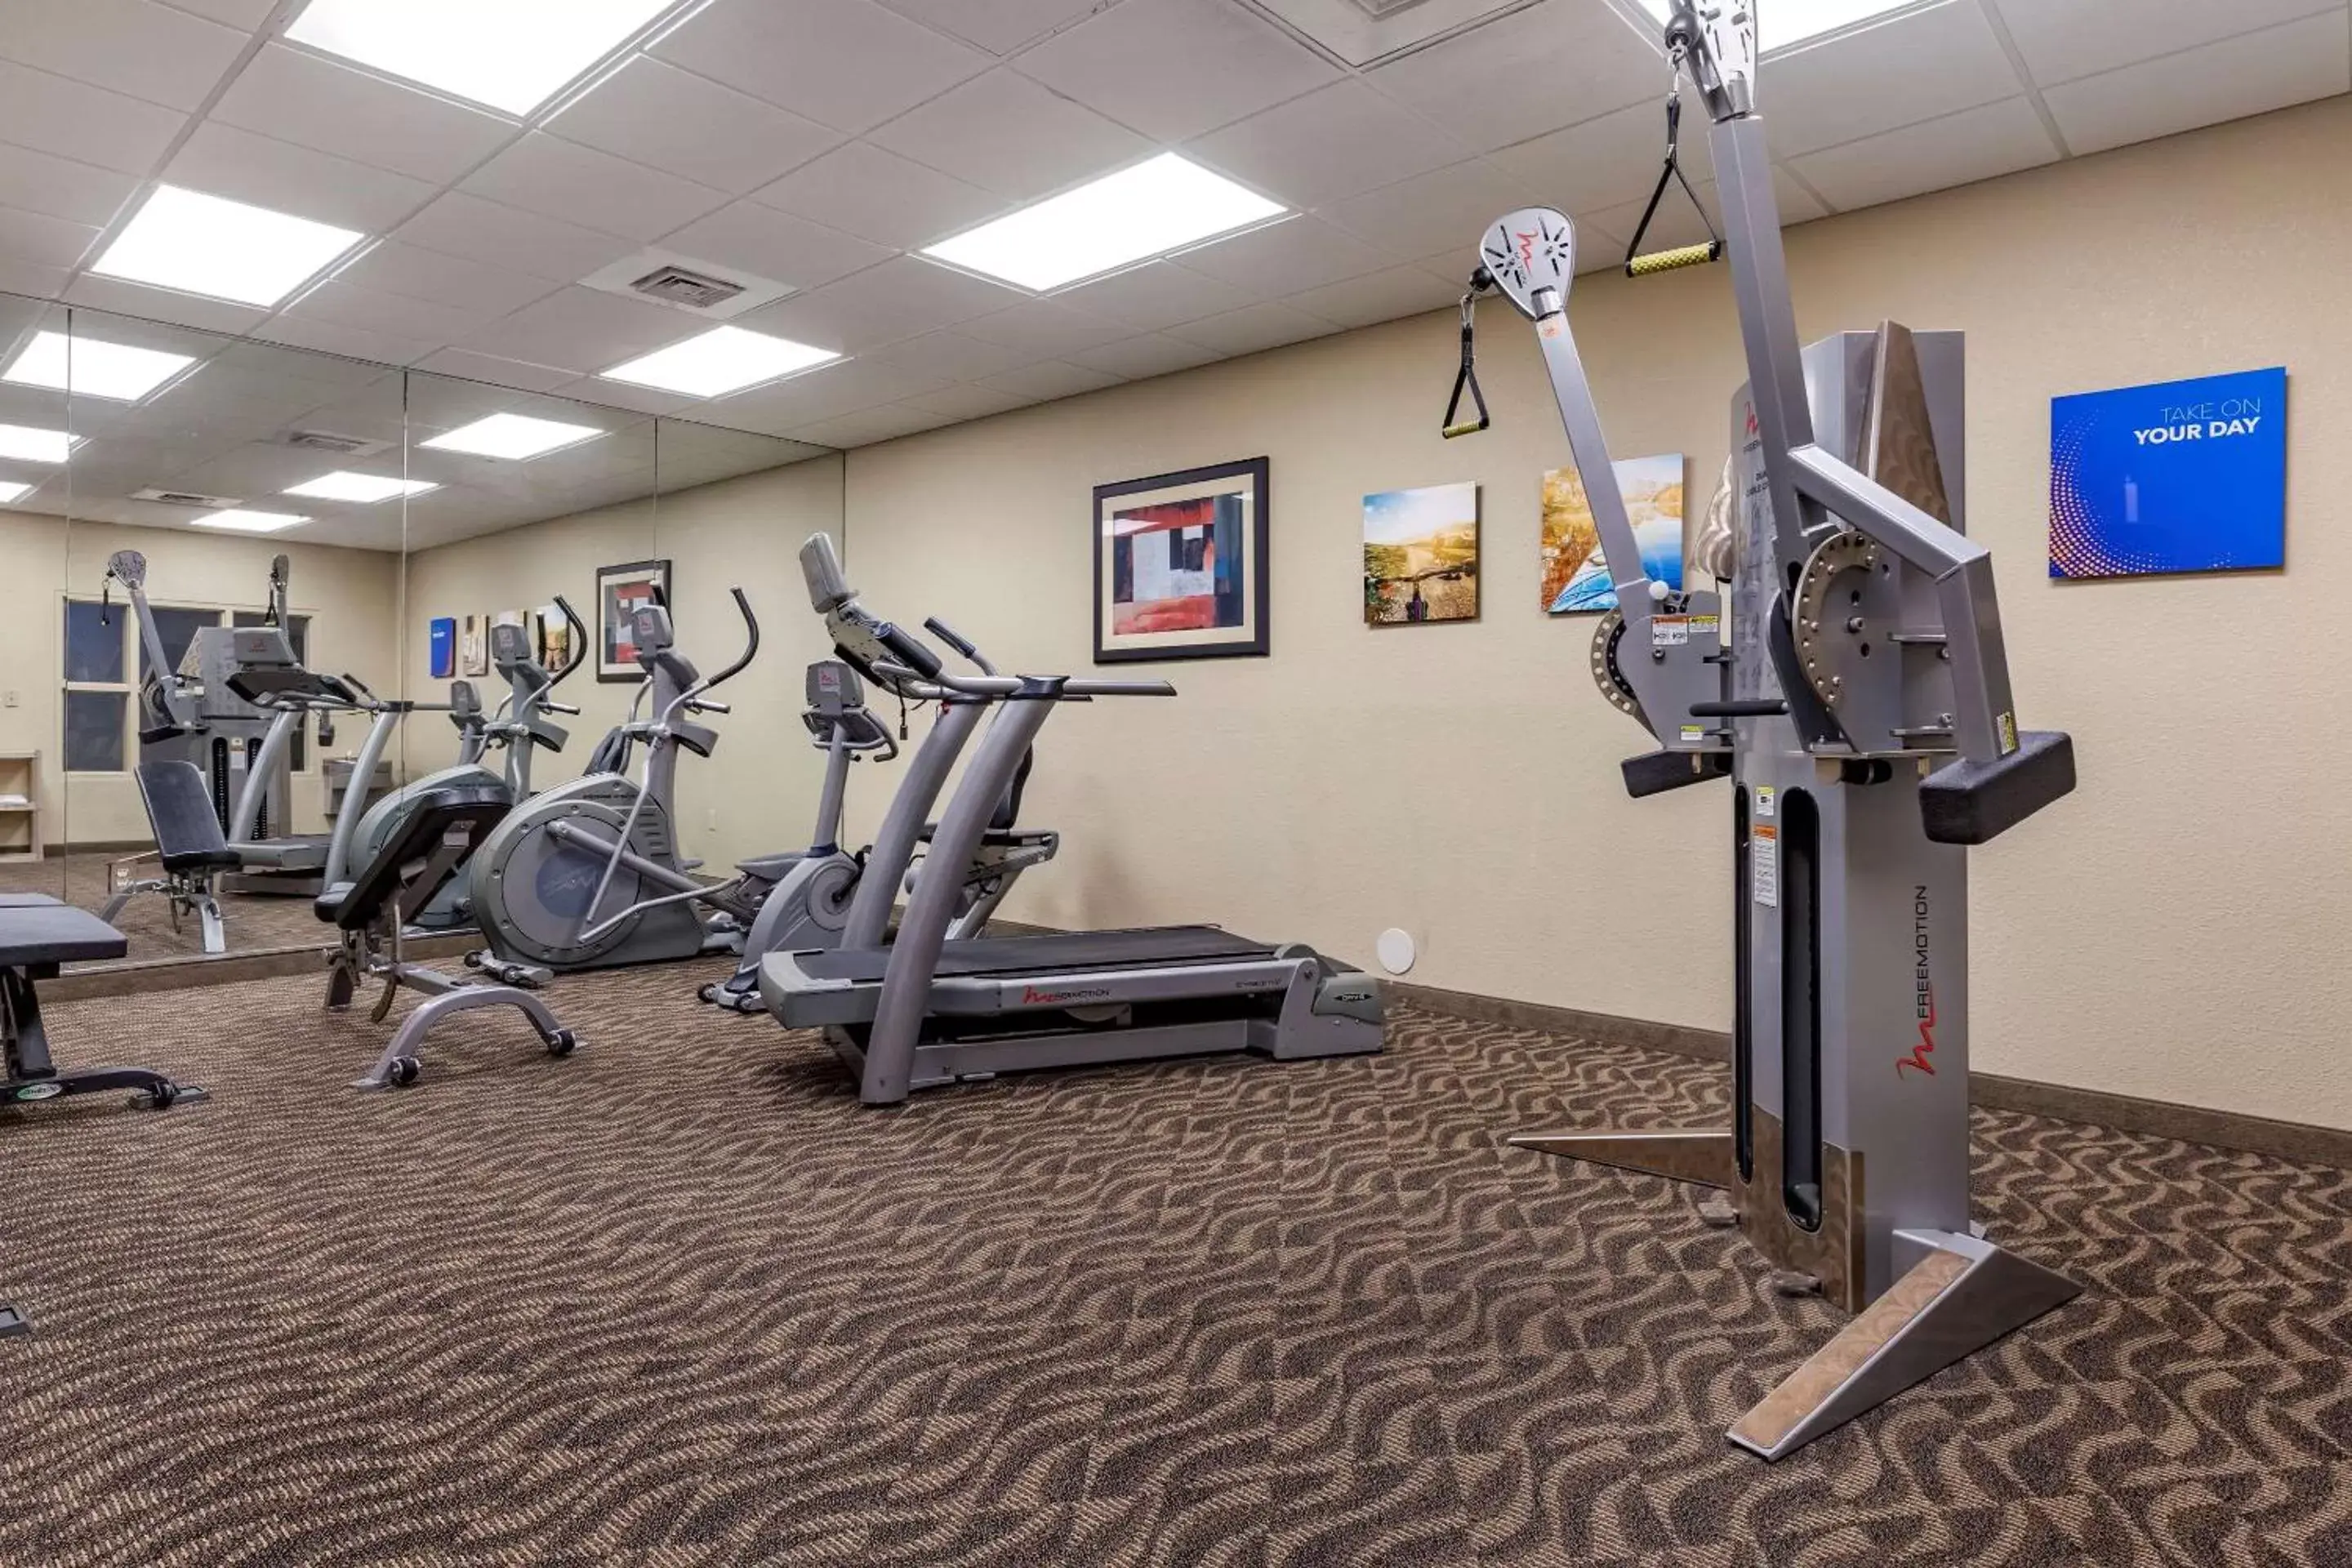 Activities, Fitness Center/Facilities in Comfort Inn Bentonville - Crystal Bridges